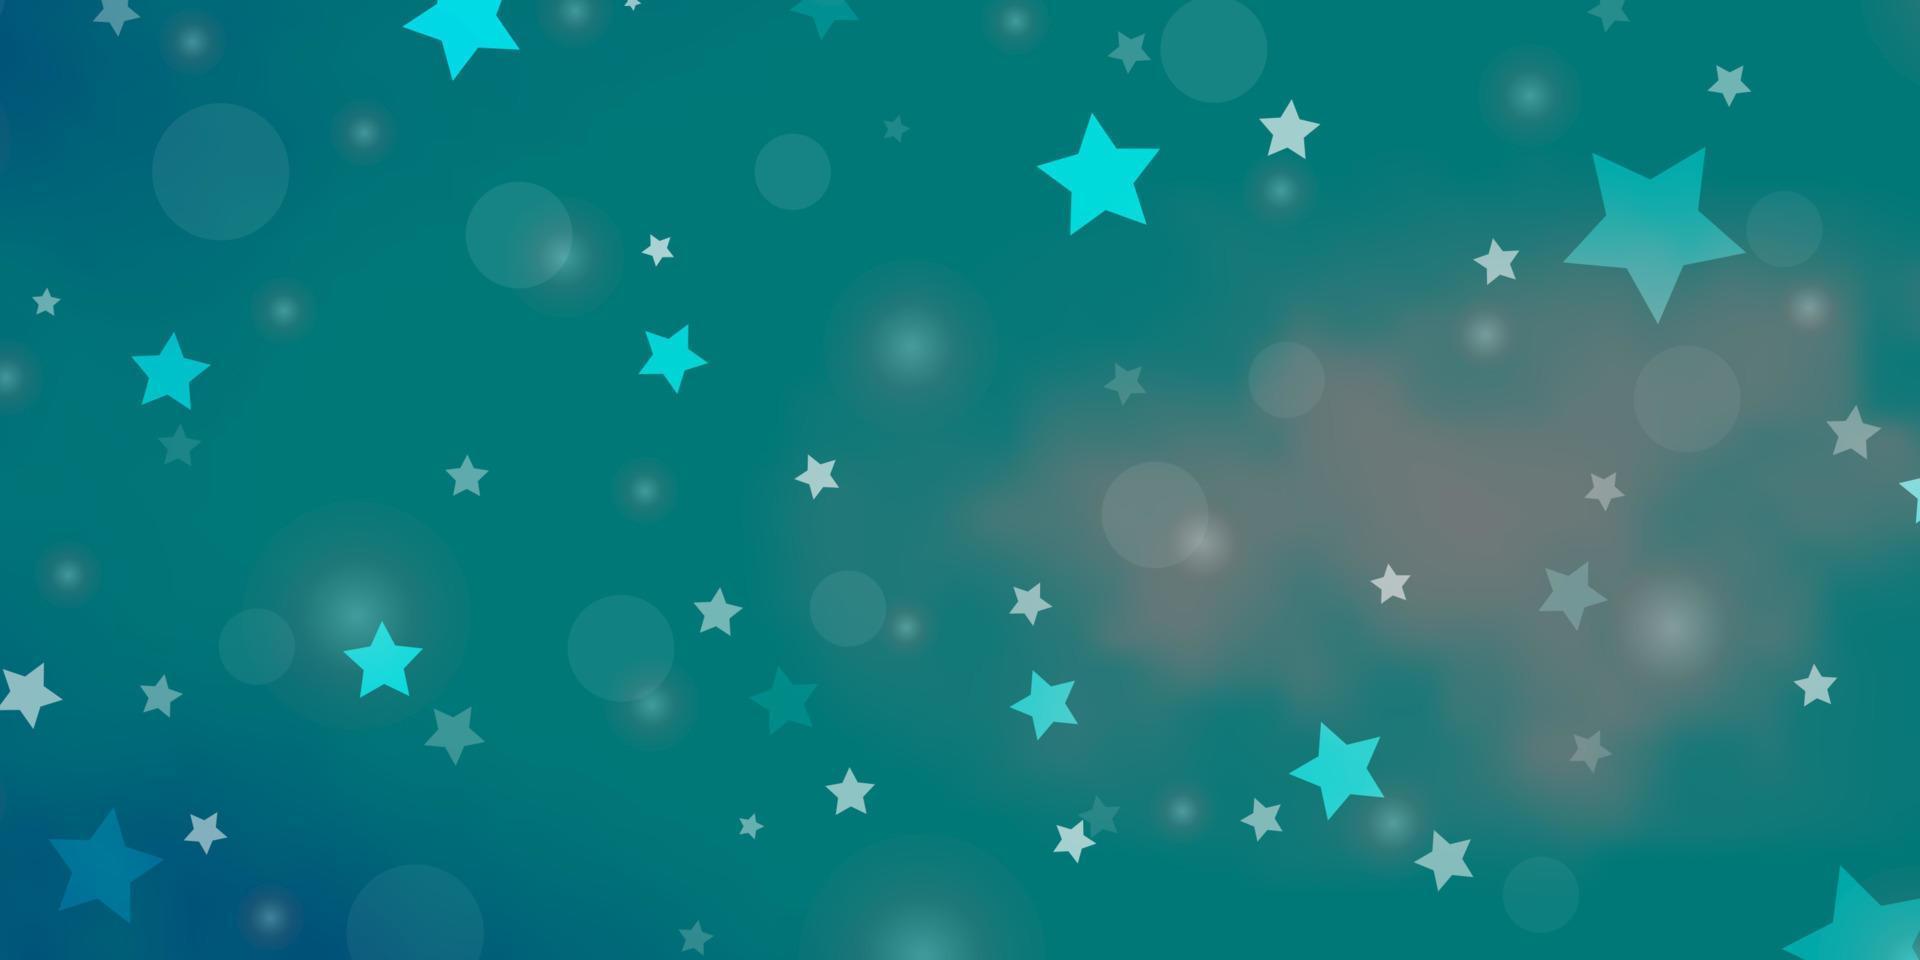 plantilla de vector azul claro, verde con círculos, estrellas.